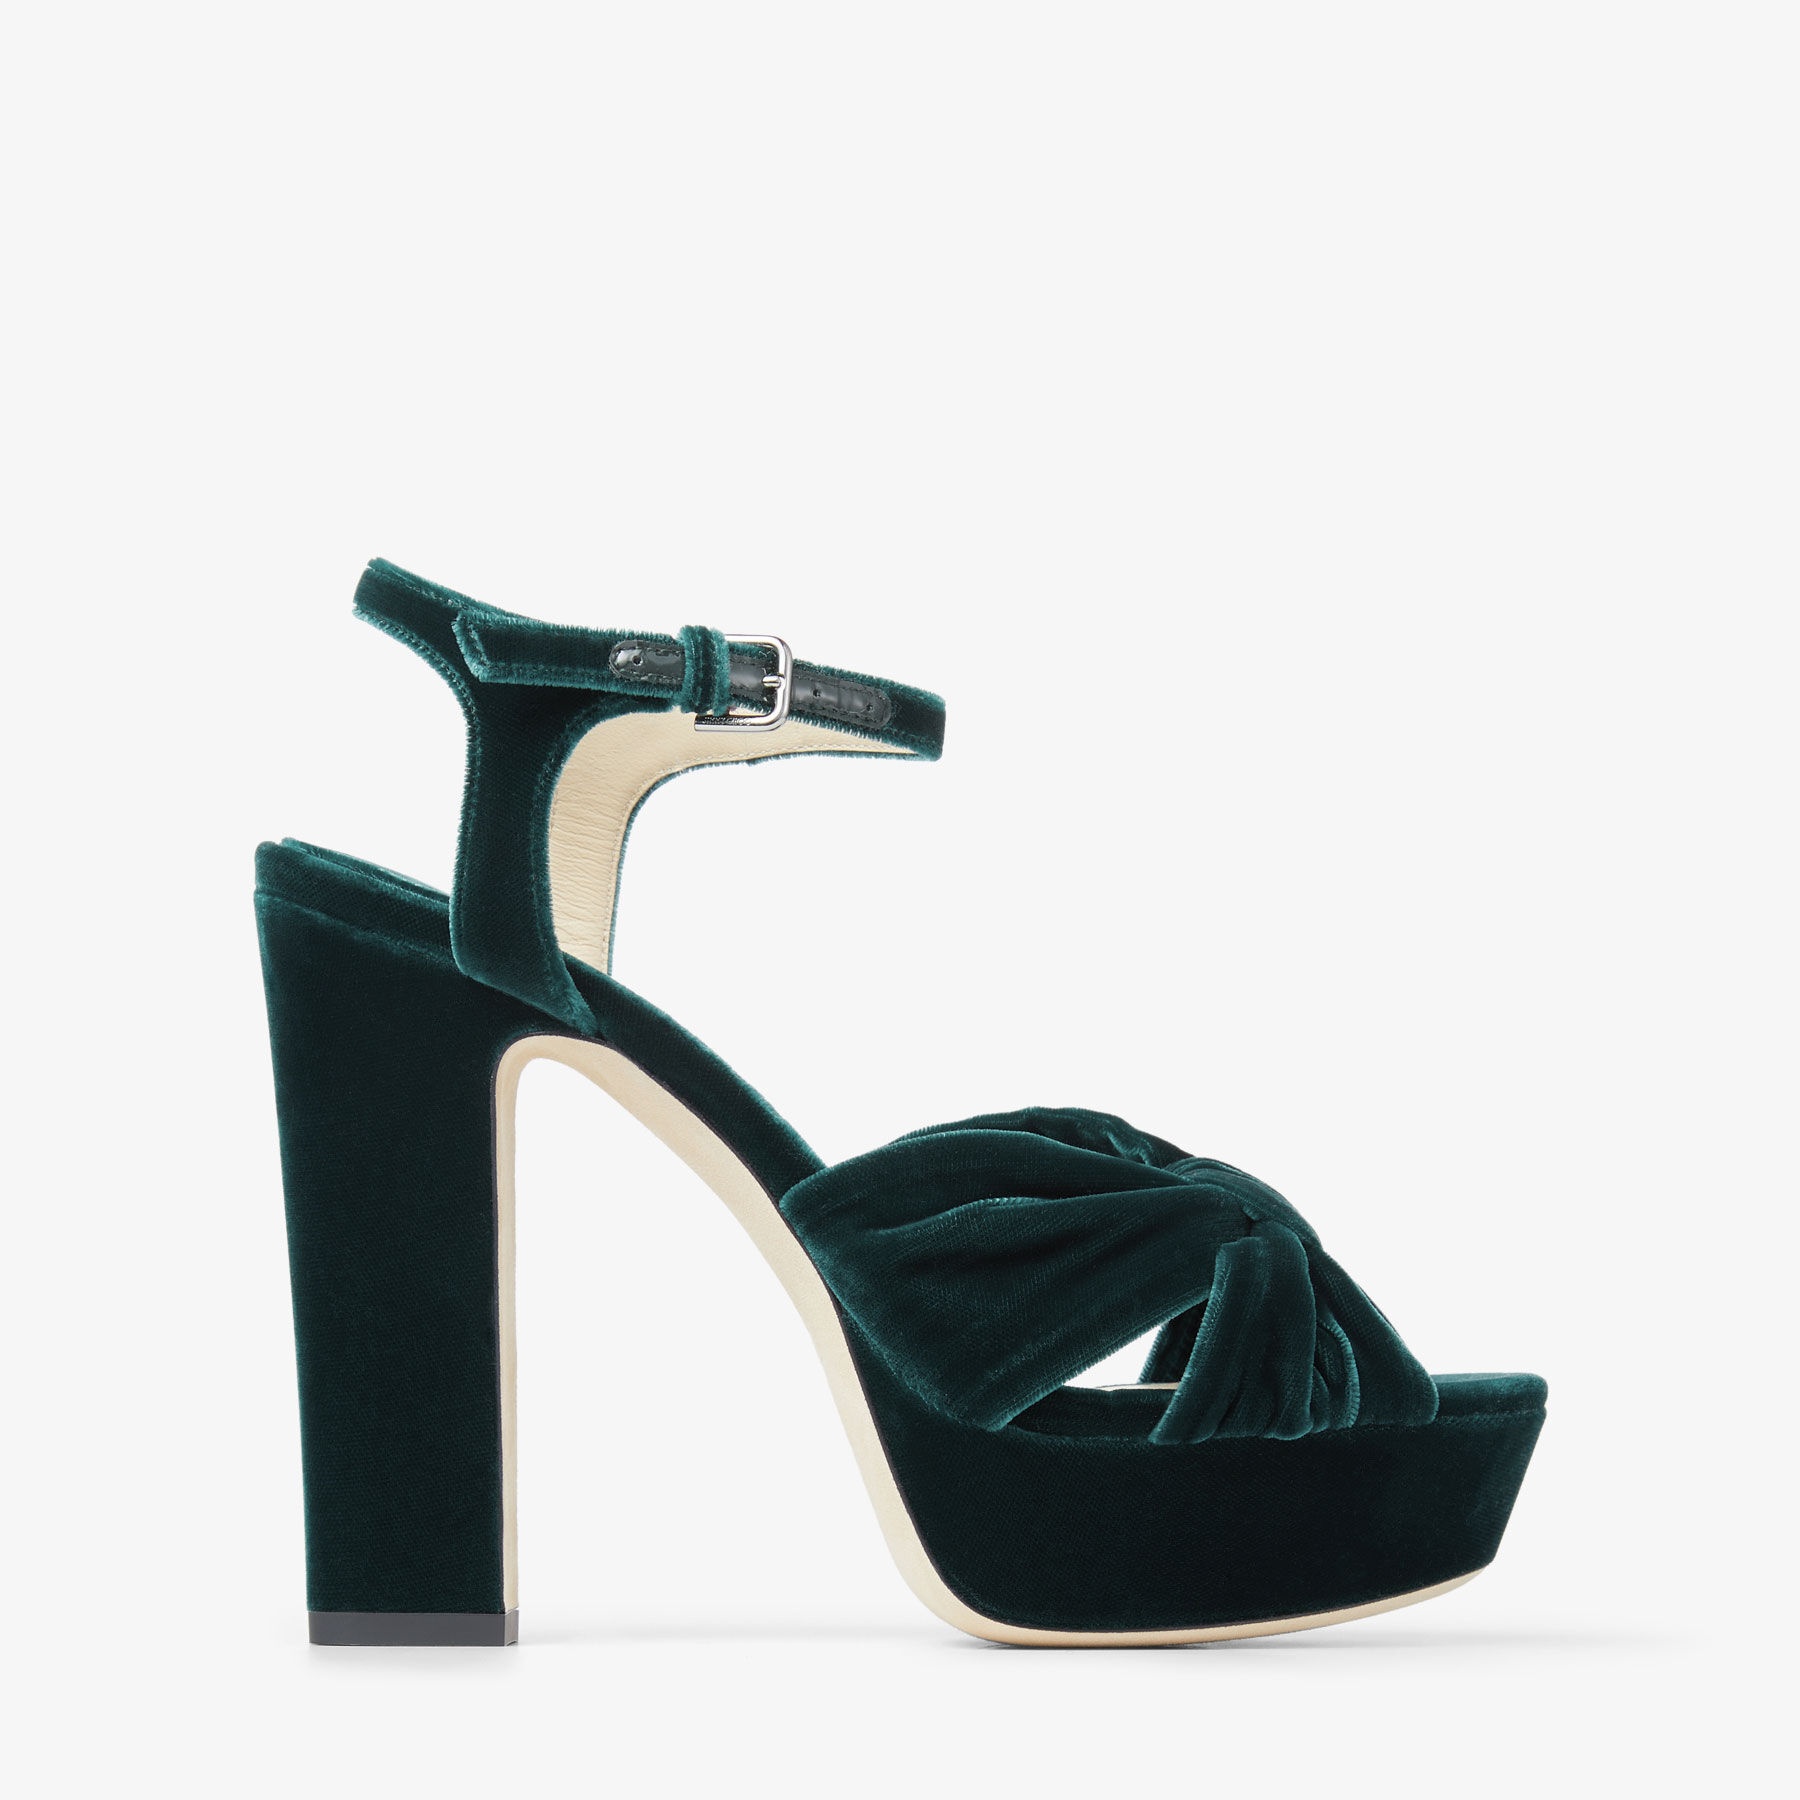 Heloise 120
Dark Green Velvet Platform Sandals - 1